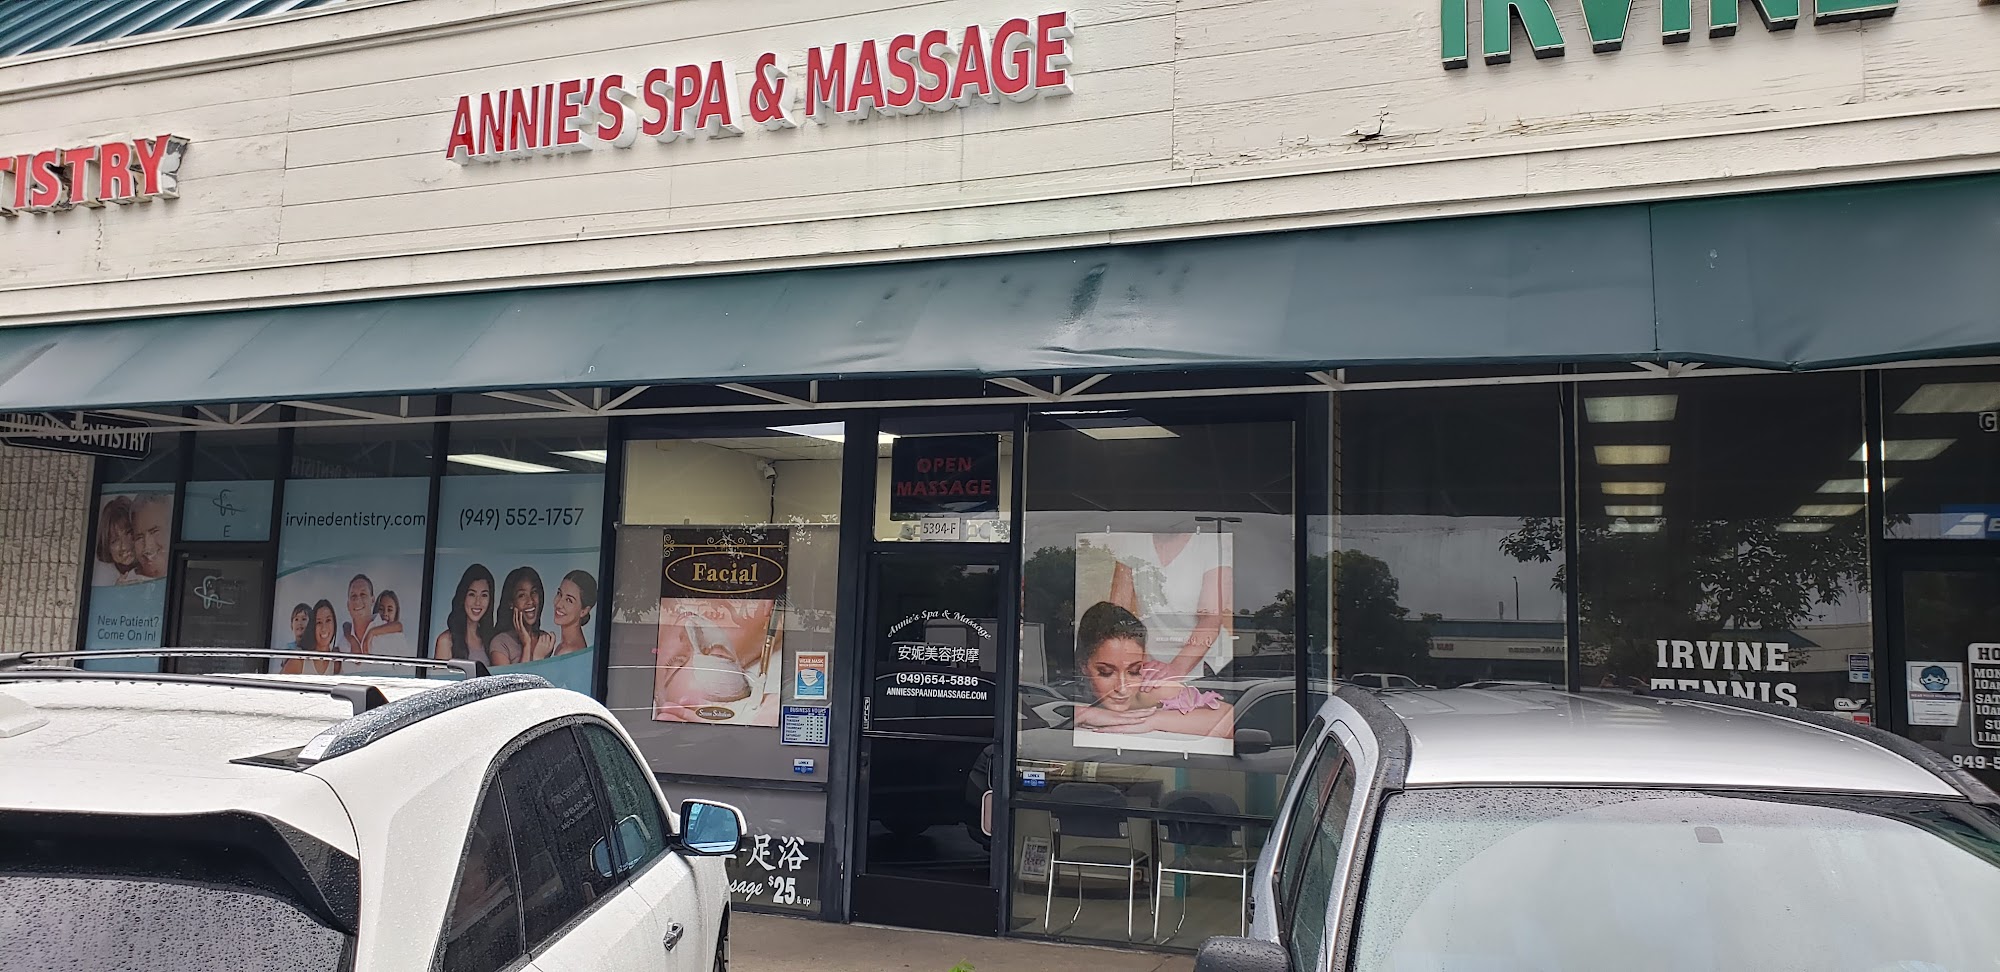 Annie's Spa & Massage